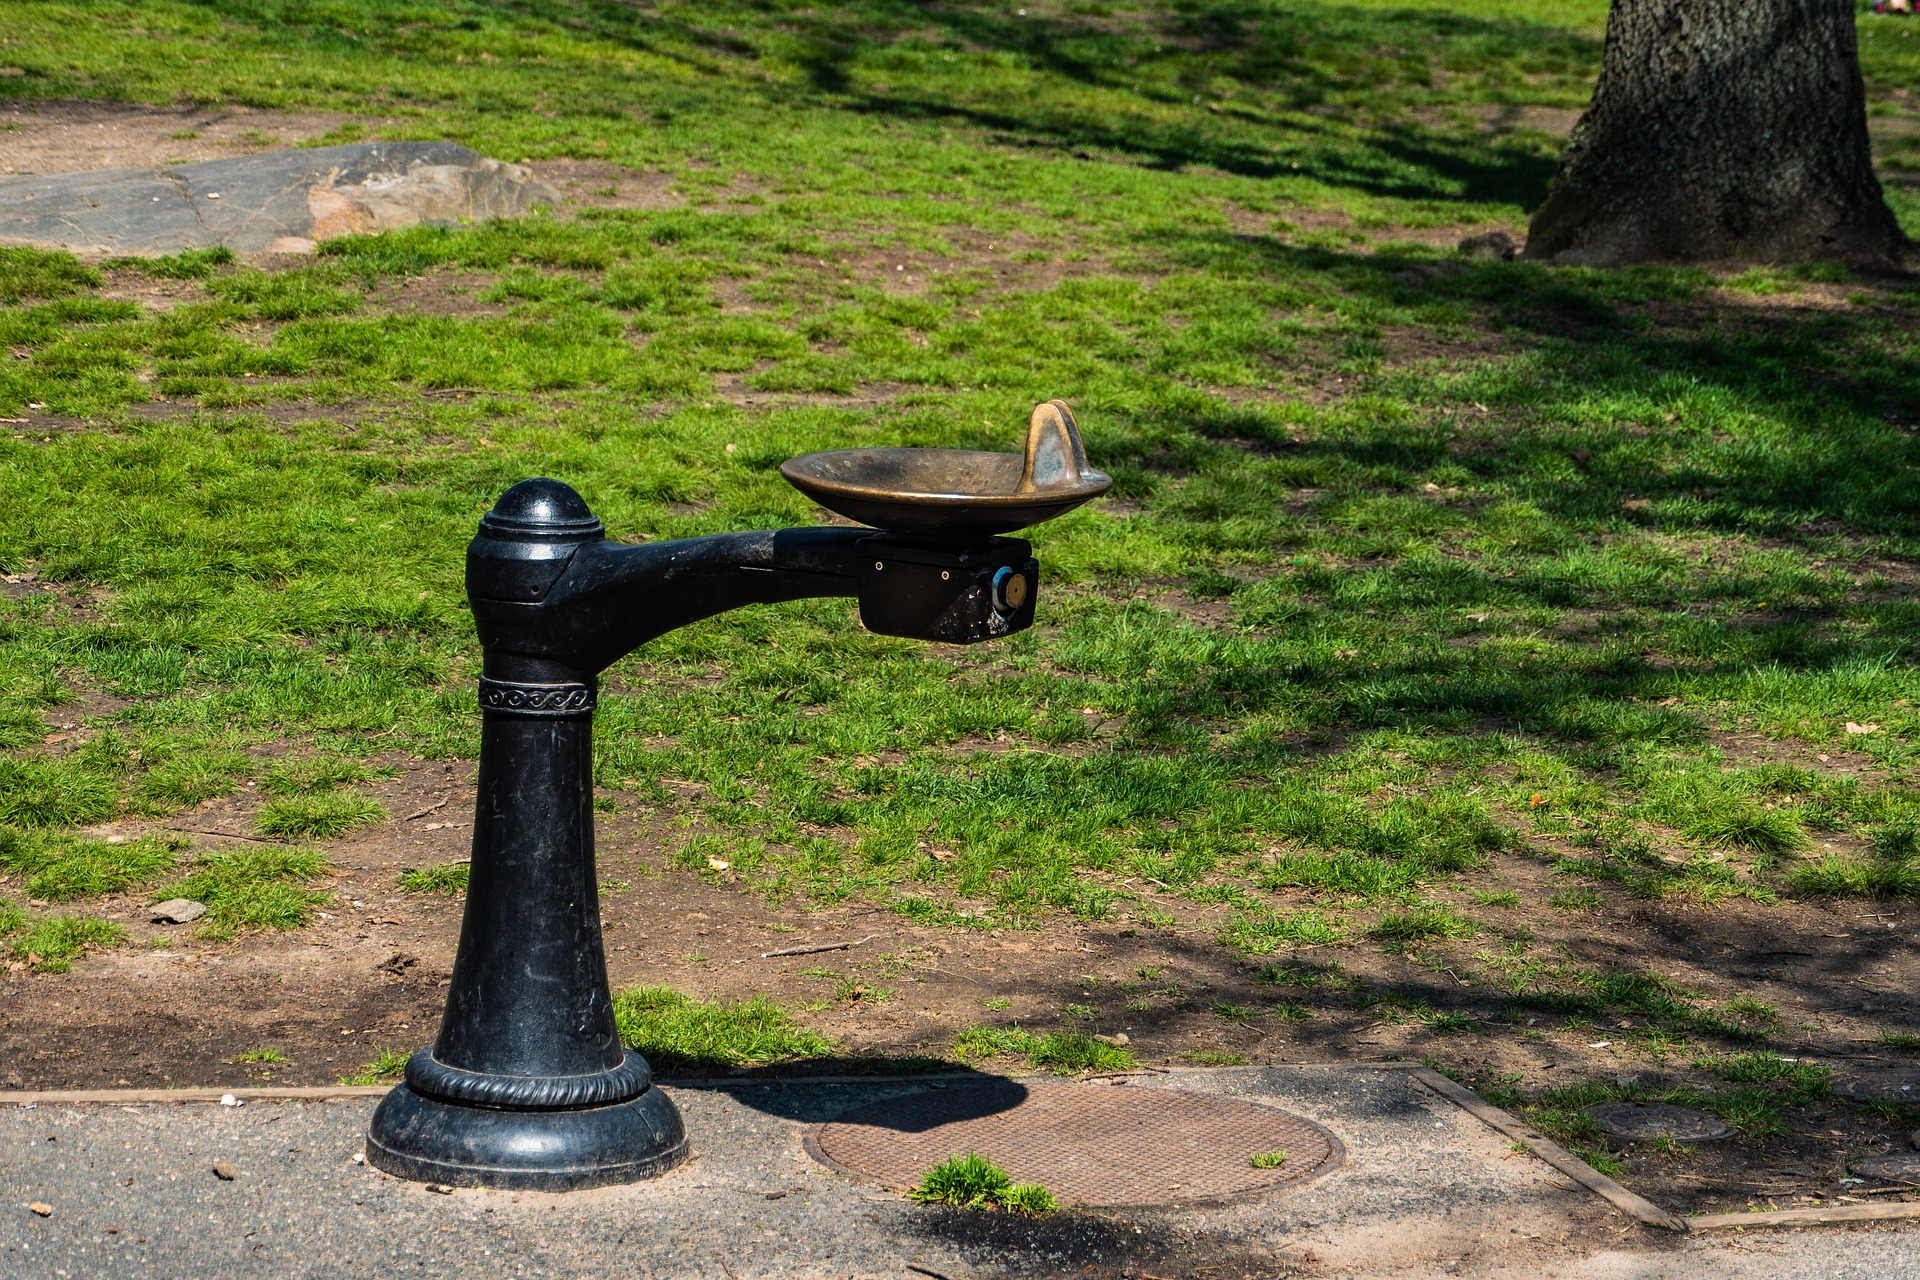 Кран для фонтанчика питьевого. Фонтанчики с питьевой водой в Ереване. Питьевой фонтанчик уличный. Питьевой фонтанчик в парке. Питьевые фонтанчики в парках.